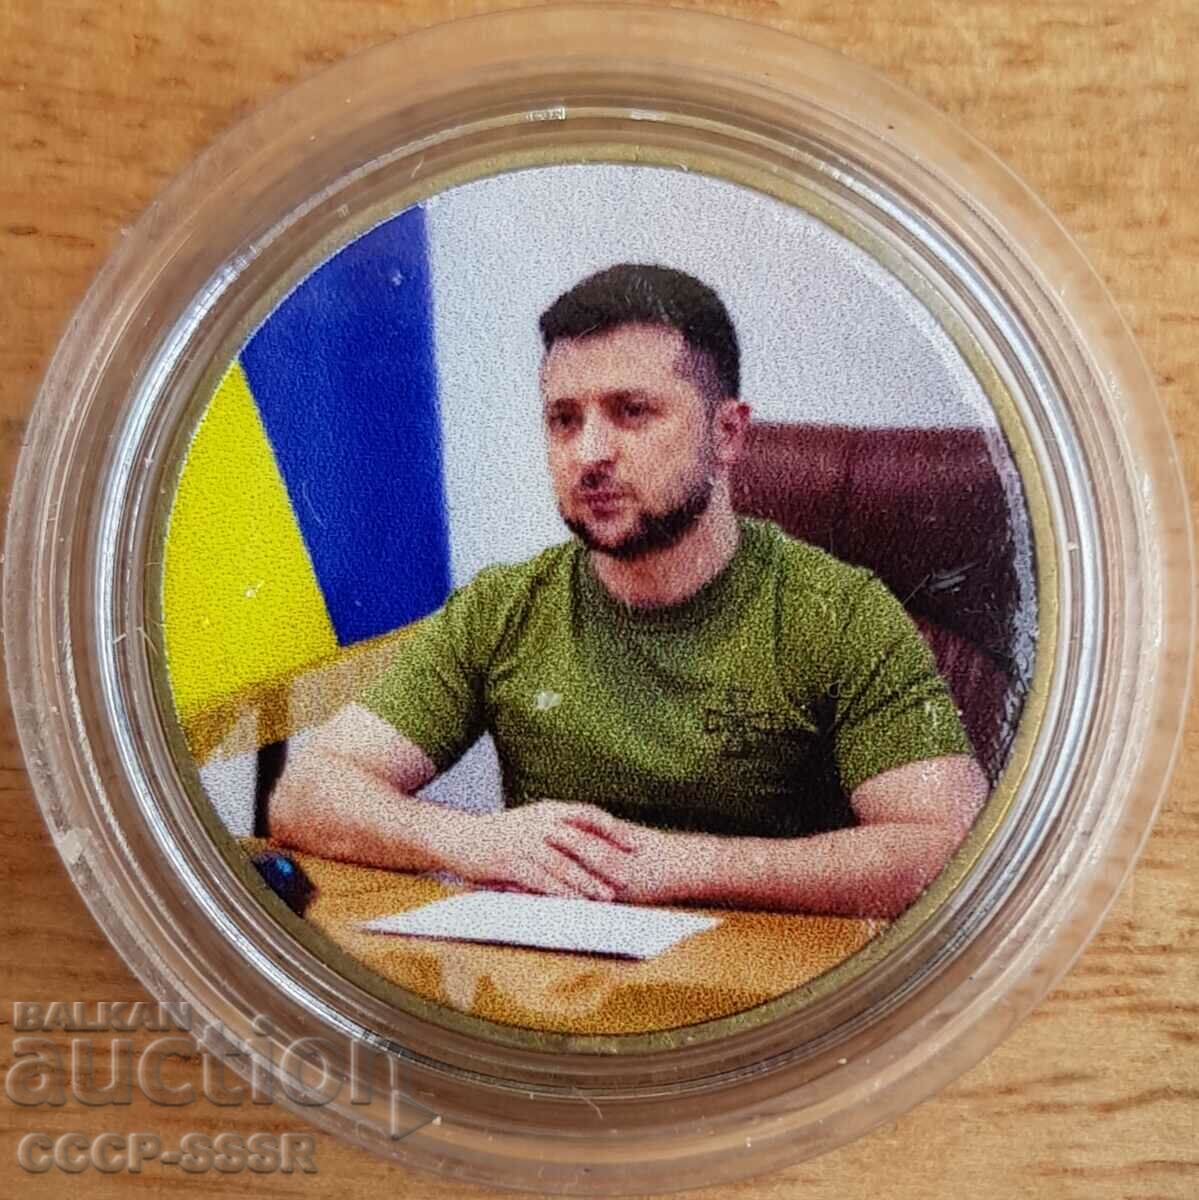 Ukraine 1 mane, Zelensky V.A. President Ukraini, limited edition